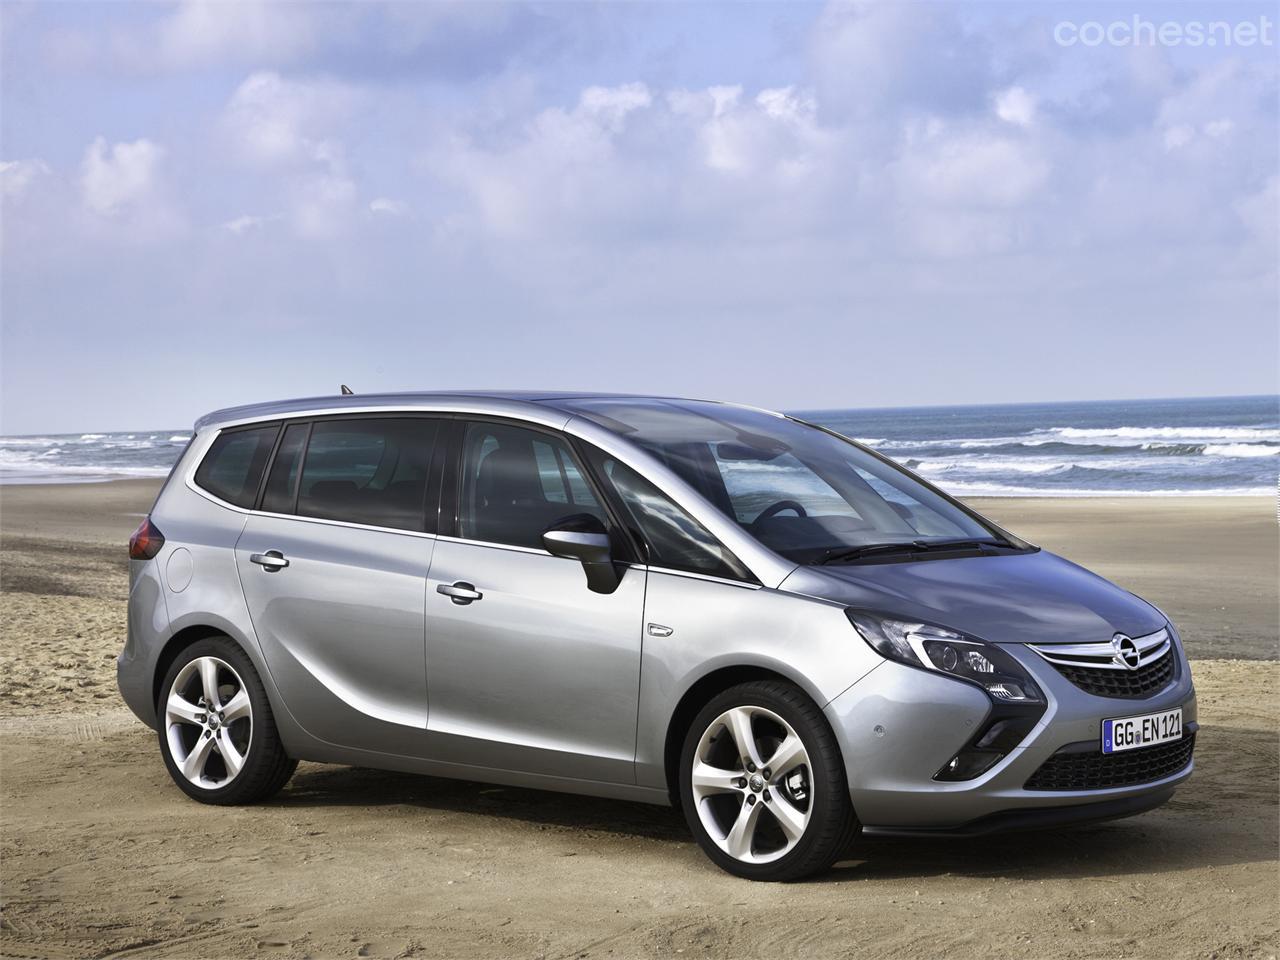 Opel Zafira, todas las versiones y motorizaciones del mercado, con